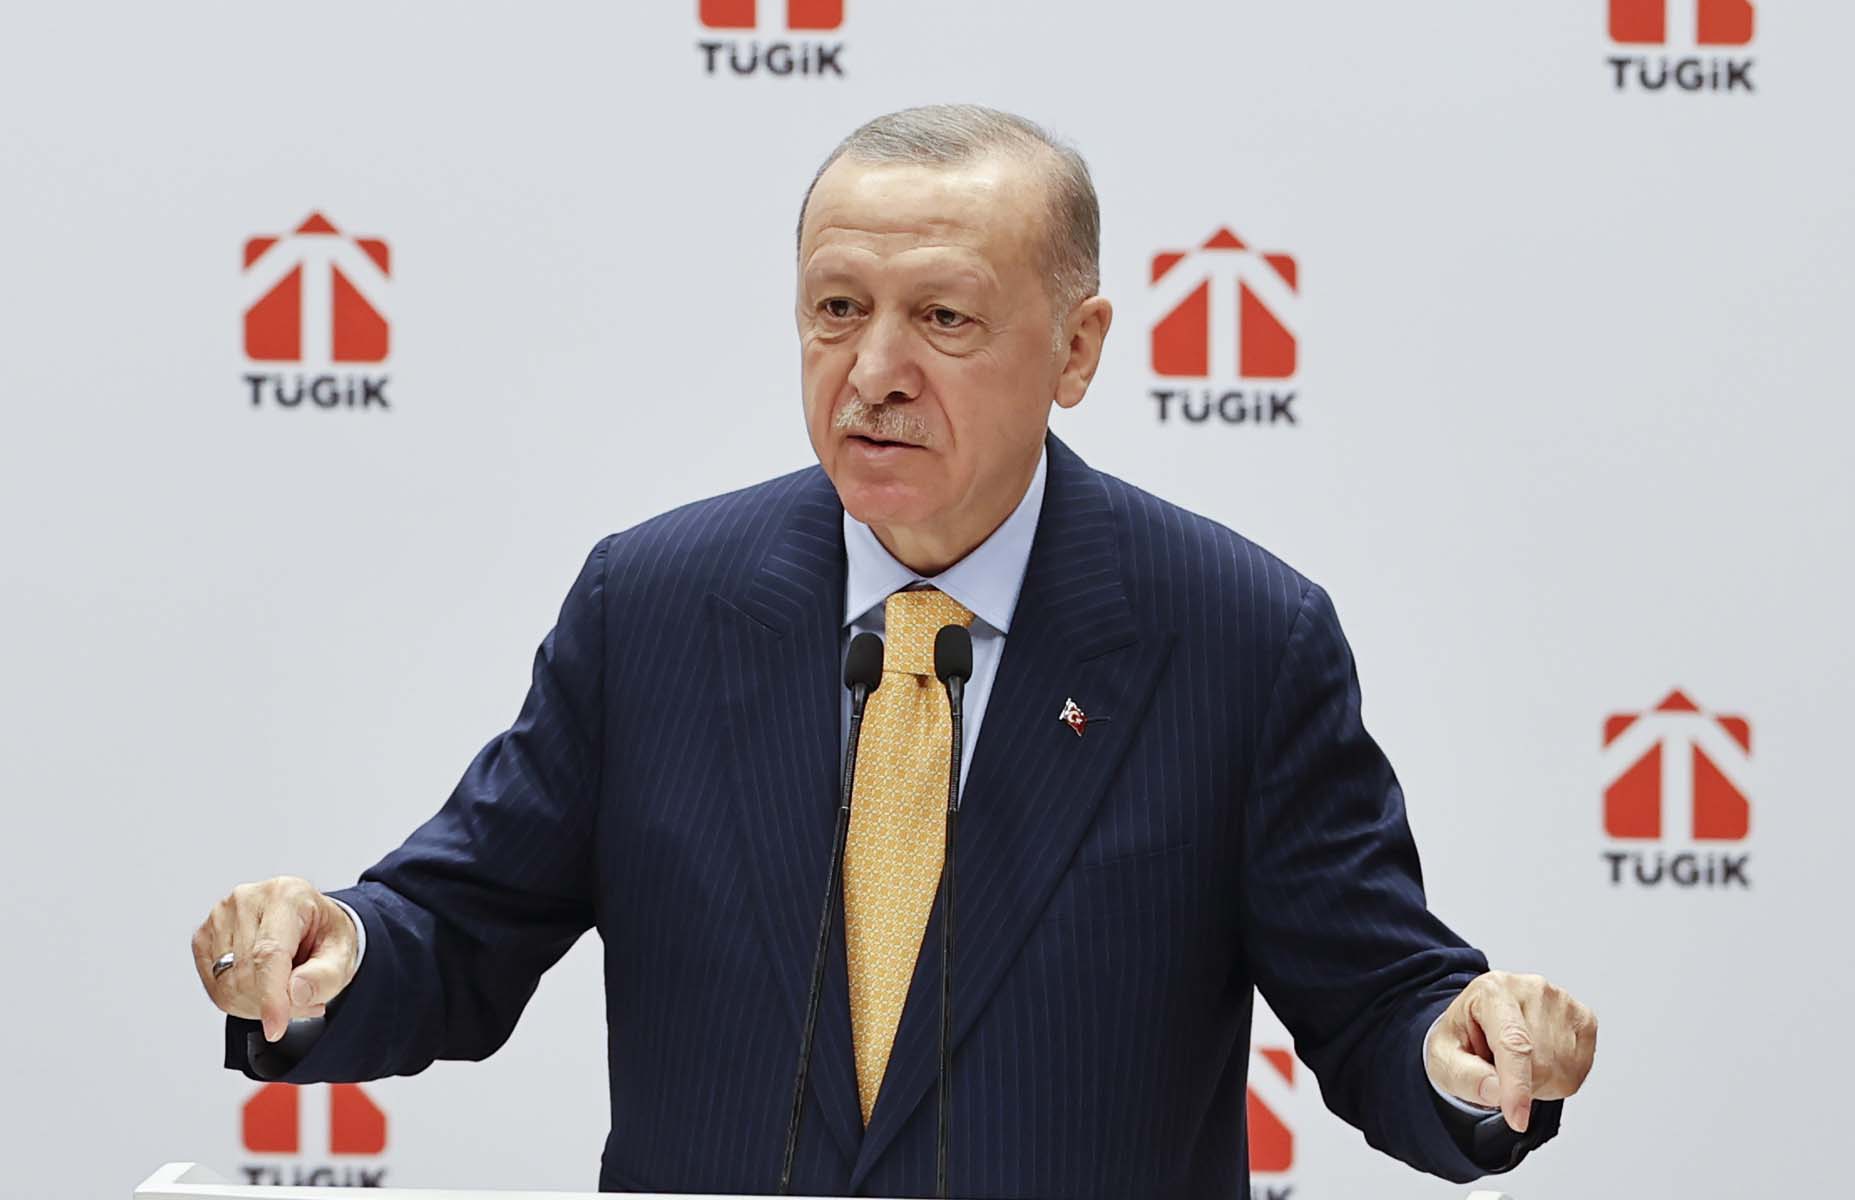 Cumhurbaşkanı Erdoğan, TÜGİK Genel Kurulu'nda konuştu: Yüksek enflasyon sarmalını bertaraf edeceğiz